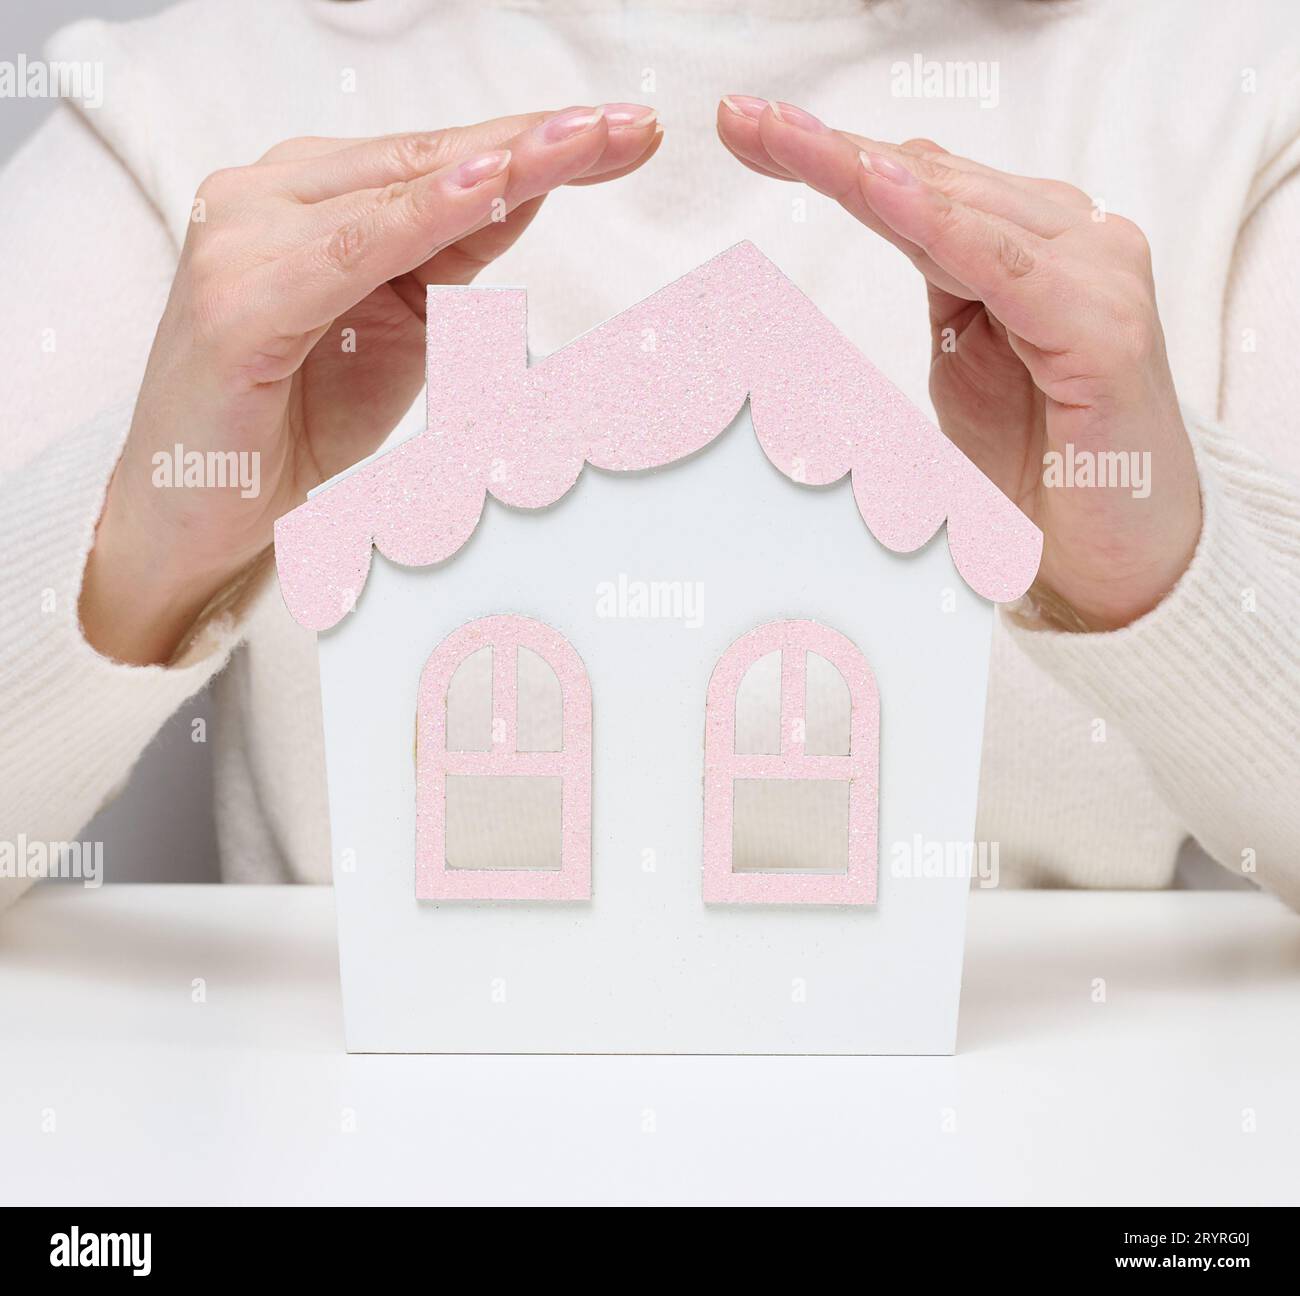 Le mani femminili si piegano l'una all'altra su una casa in miniatura in legno su sfondo bianco. Concetto di assicurazione immobiliare, envi Foto Stock